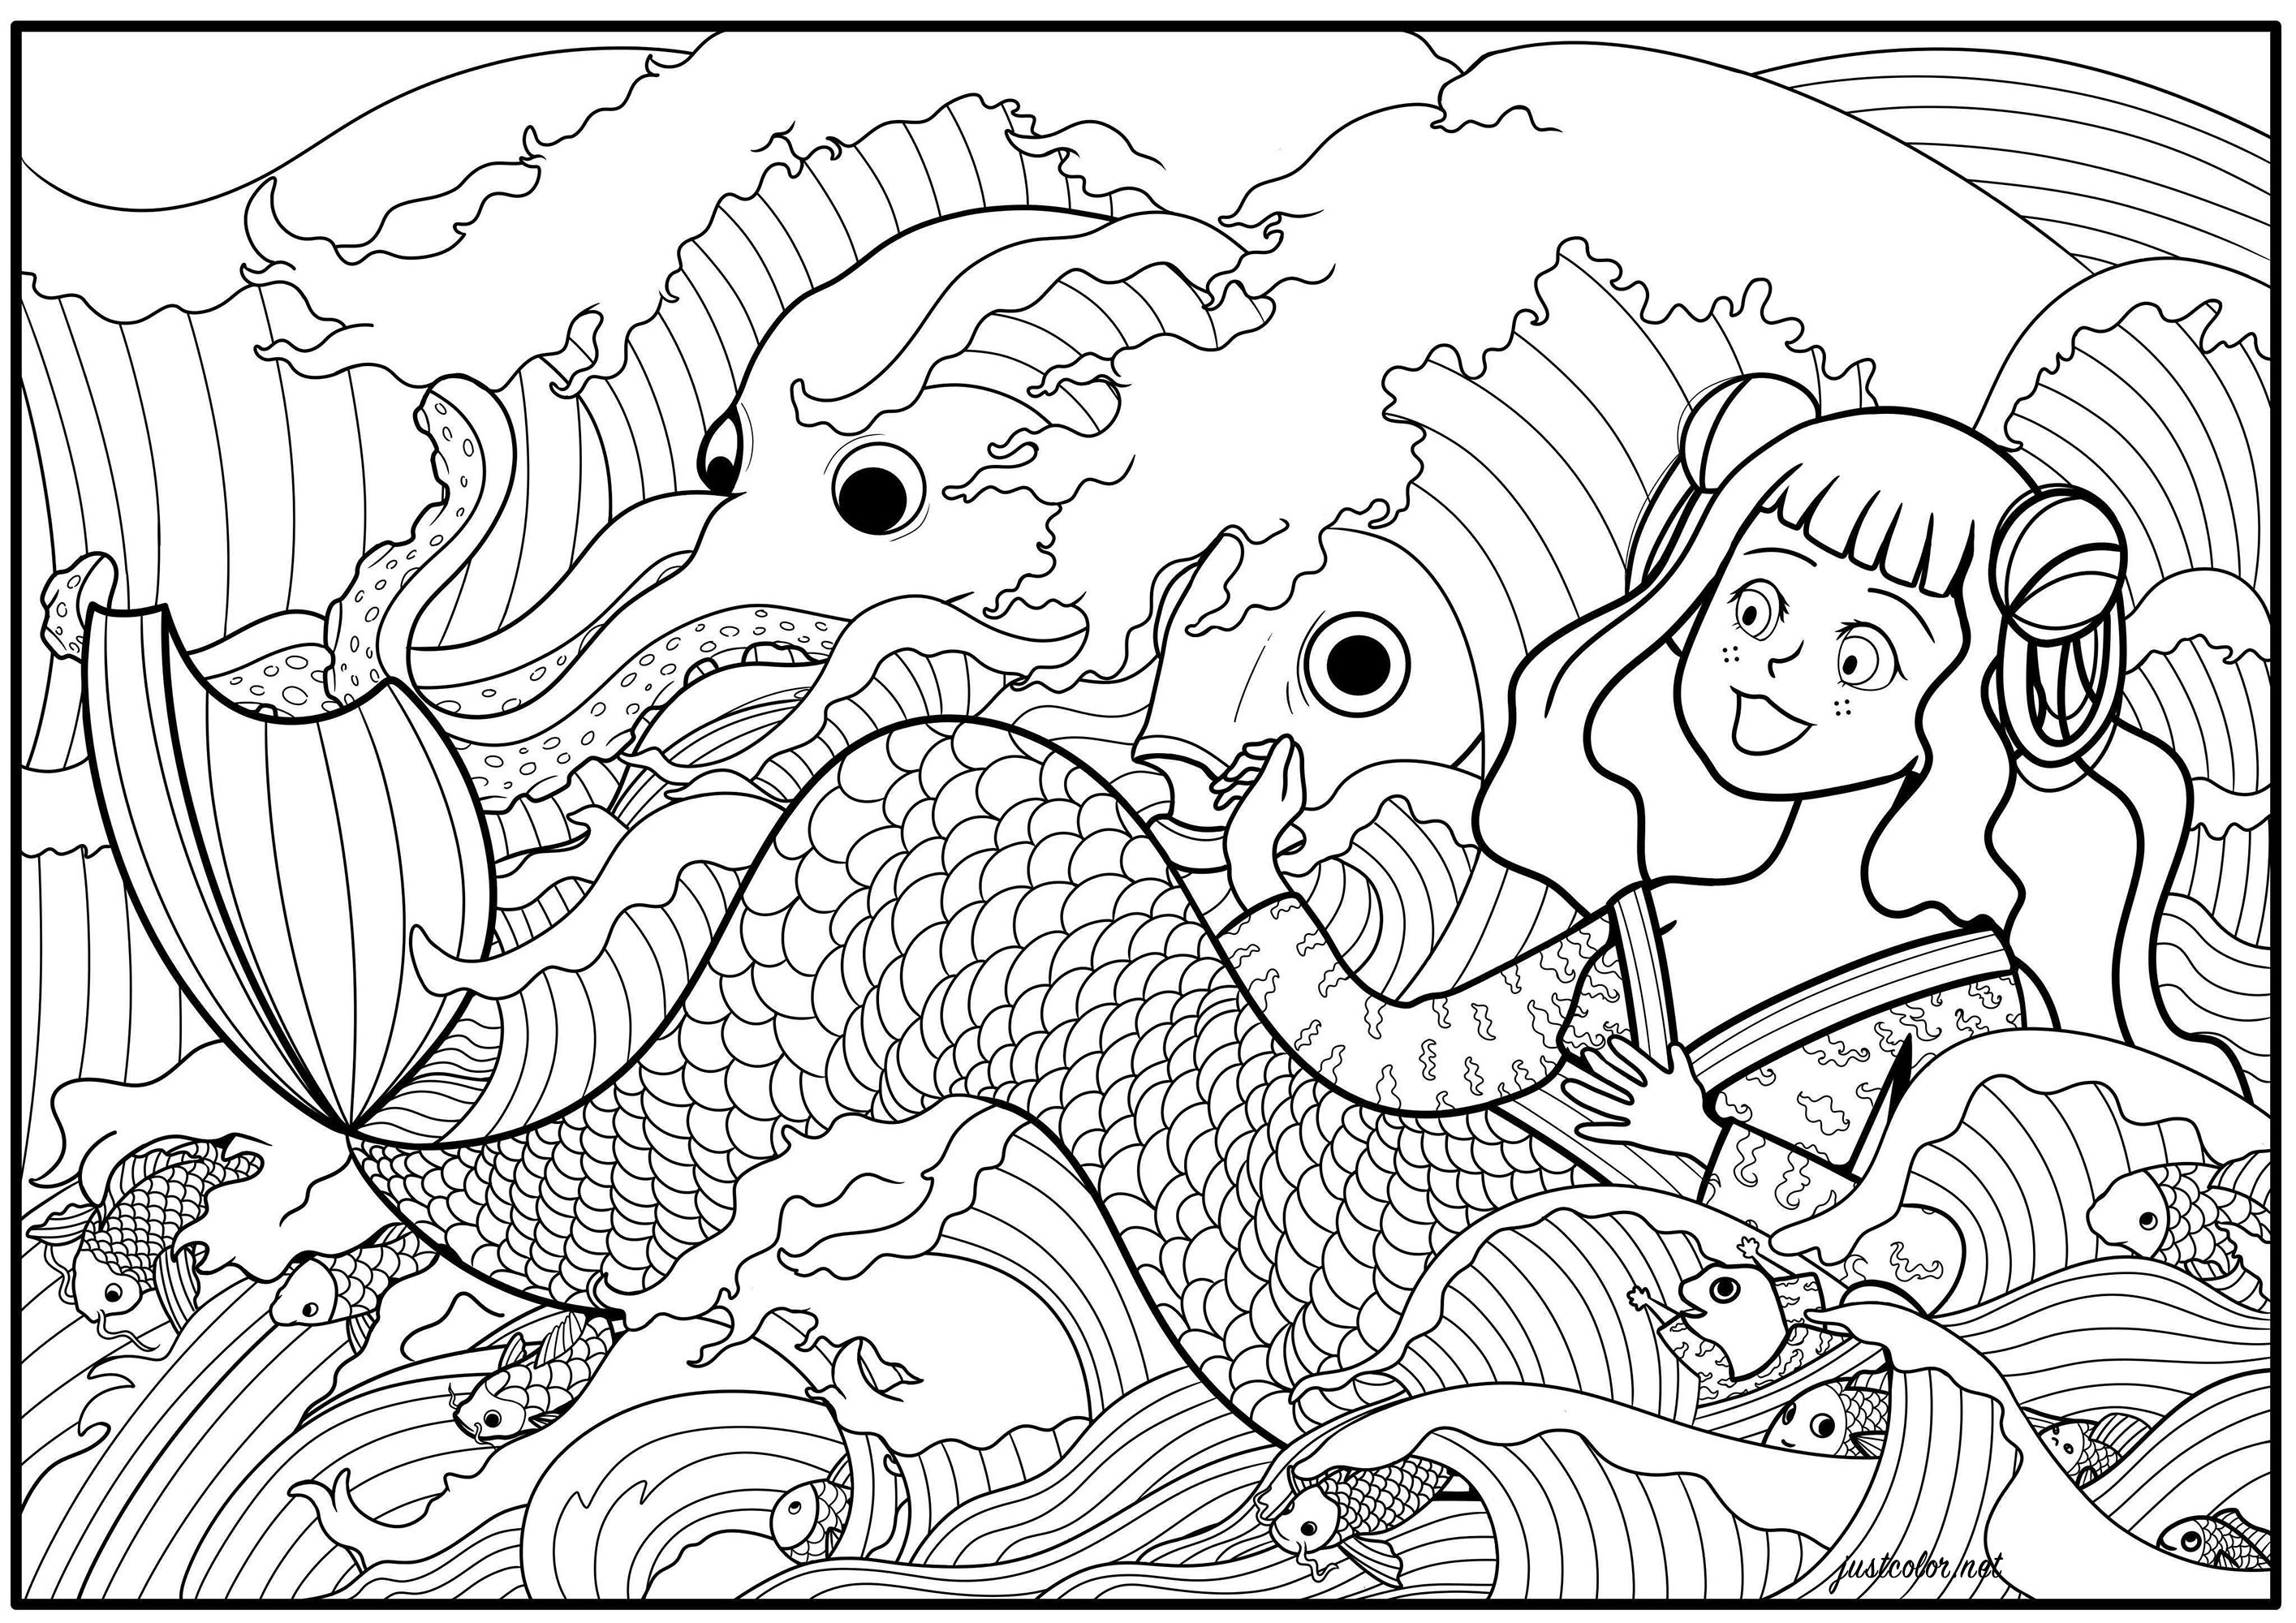 Diese Malvorlage zeigt eine Meerjungfrau, die von Wellen und verschiedenen Meerestieren umgeben ist.  Dies ist eine Neuinterpretation einer Illustration von Benjamin Lacombe.